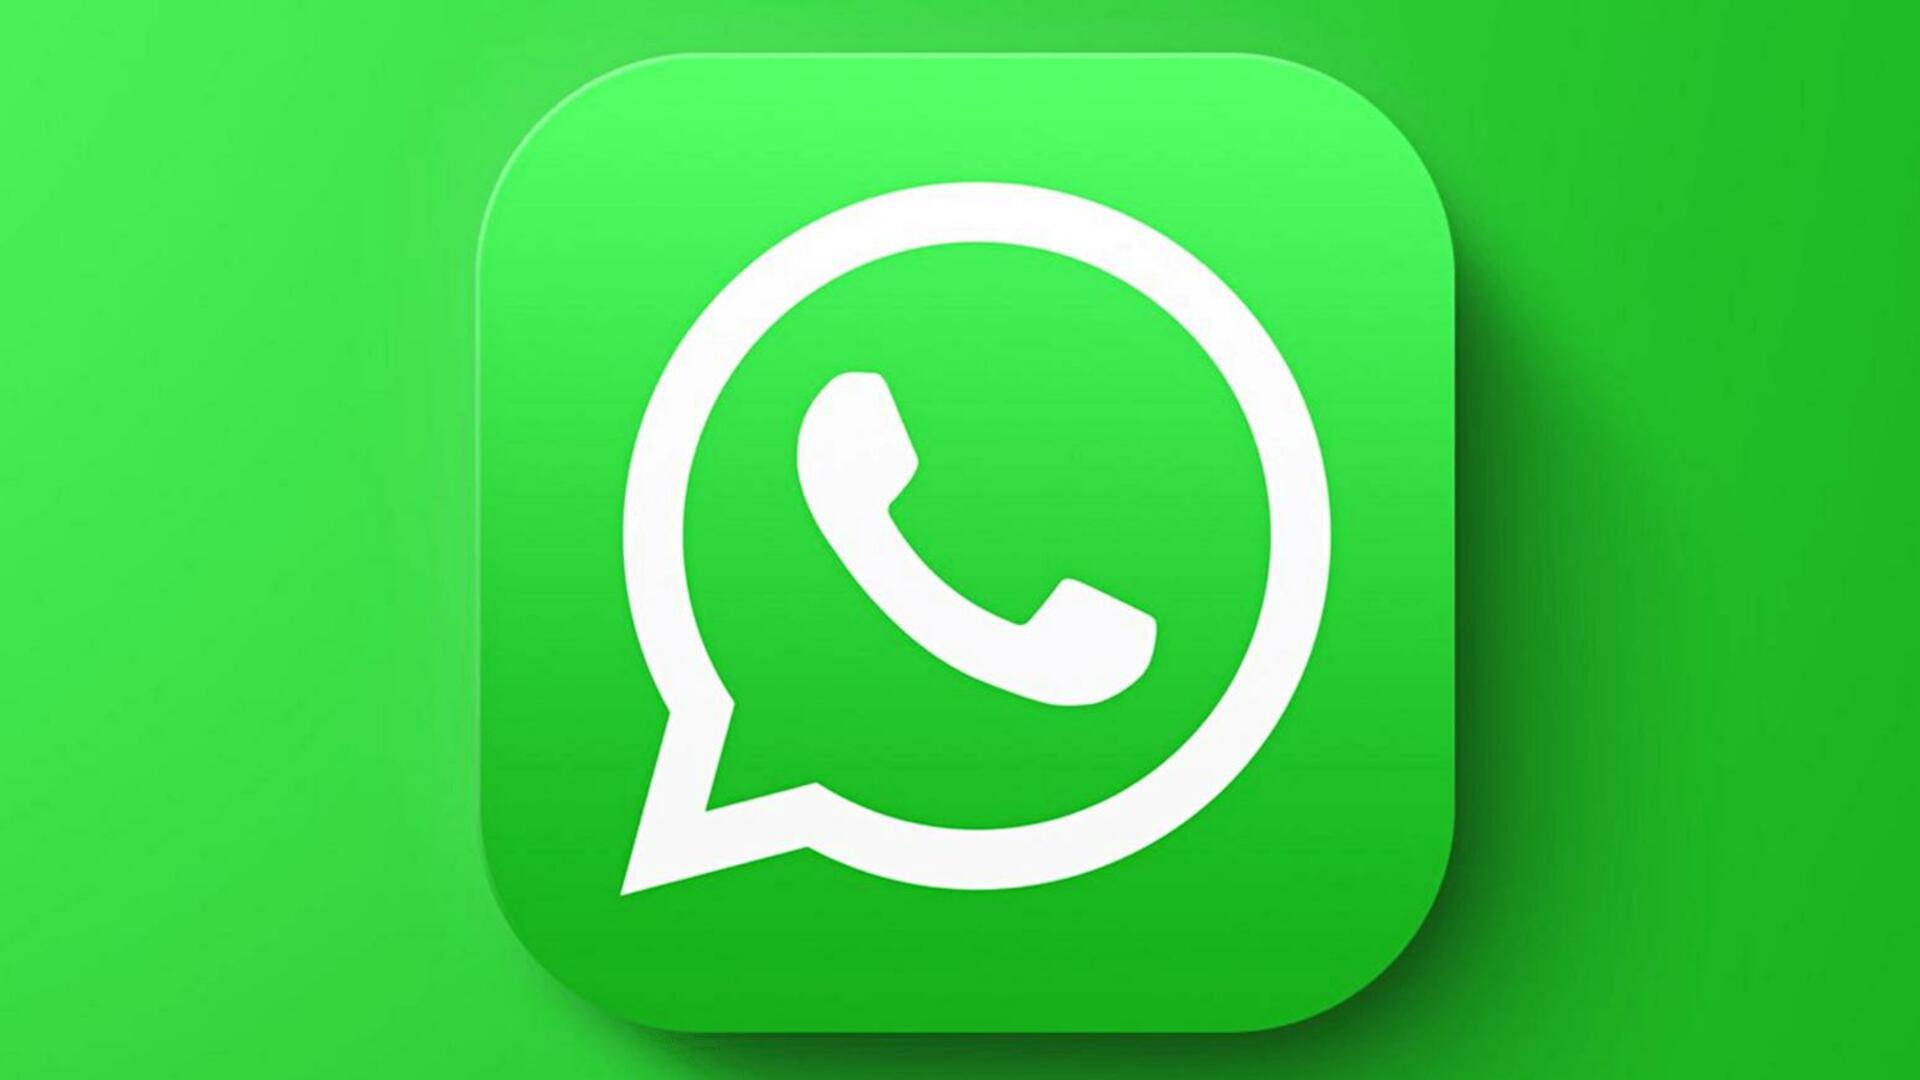 व्हाट्सऐप यूजर्स को जल्द मिलेगा 'सर्च बार सेटिंग्स' फीचर, जानिए कैसे होगा उपयोगी